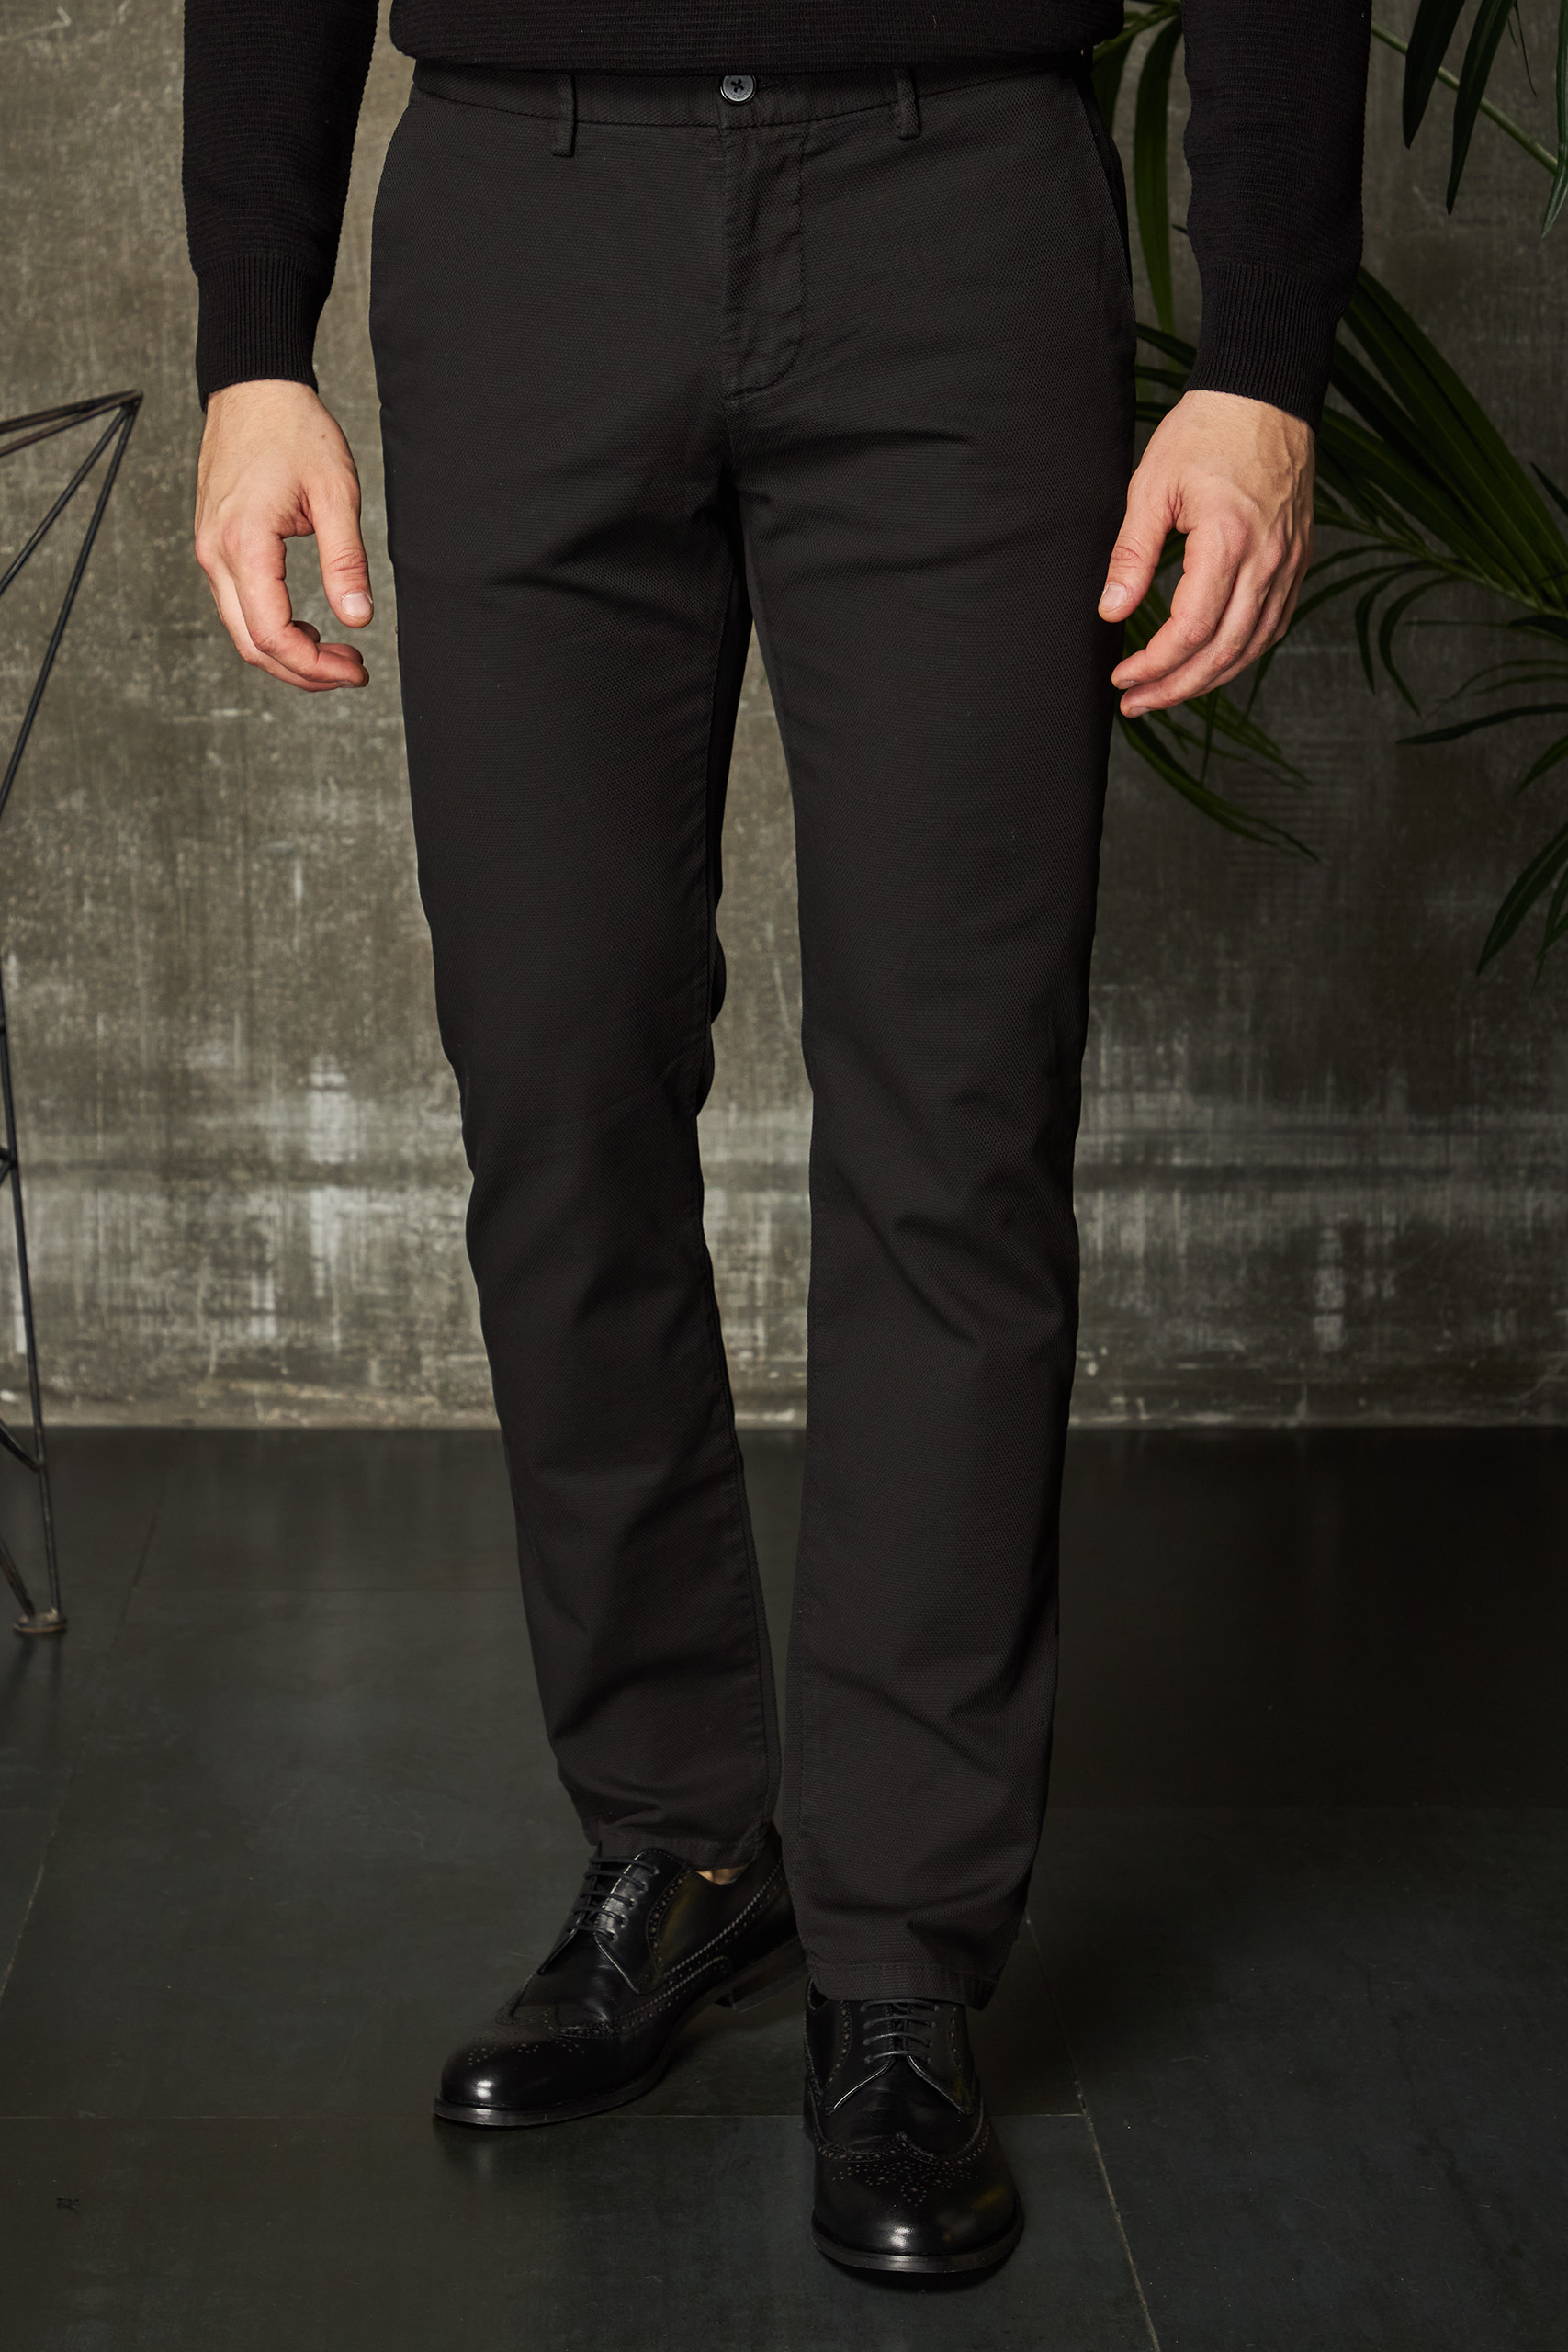 Мужские черные брюки - чинос. Арт.:4264 – купить в магазине мужской одеждыSmartcasuals